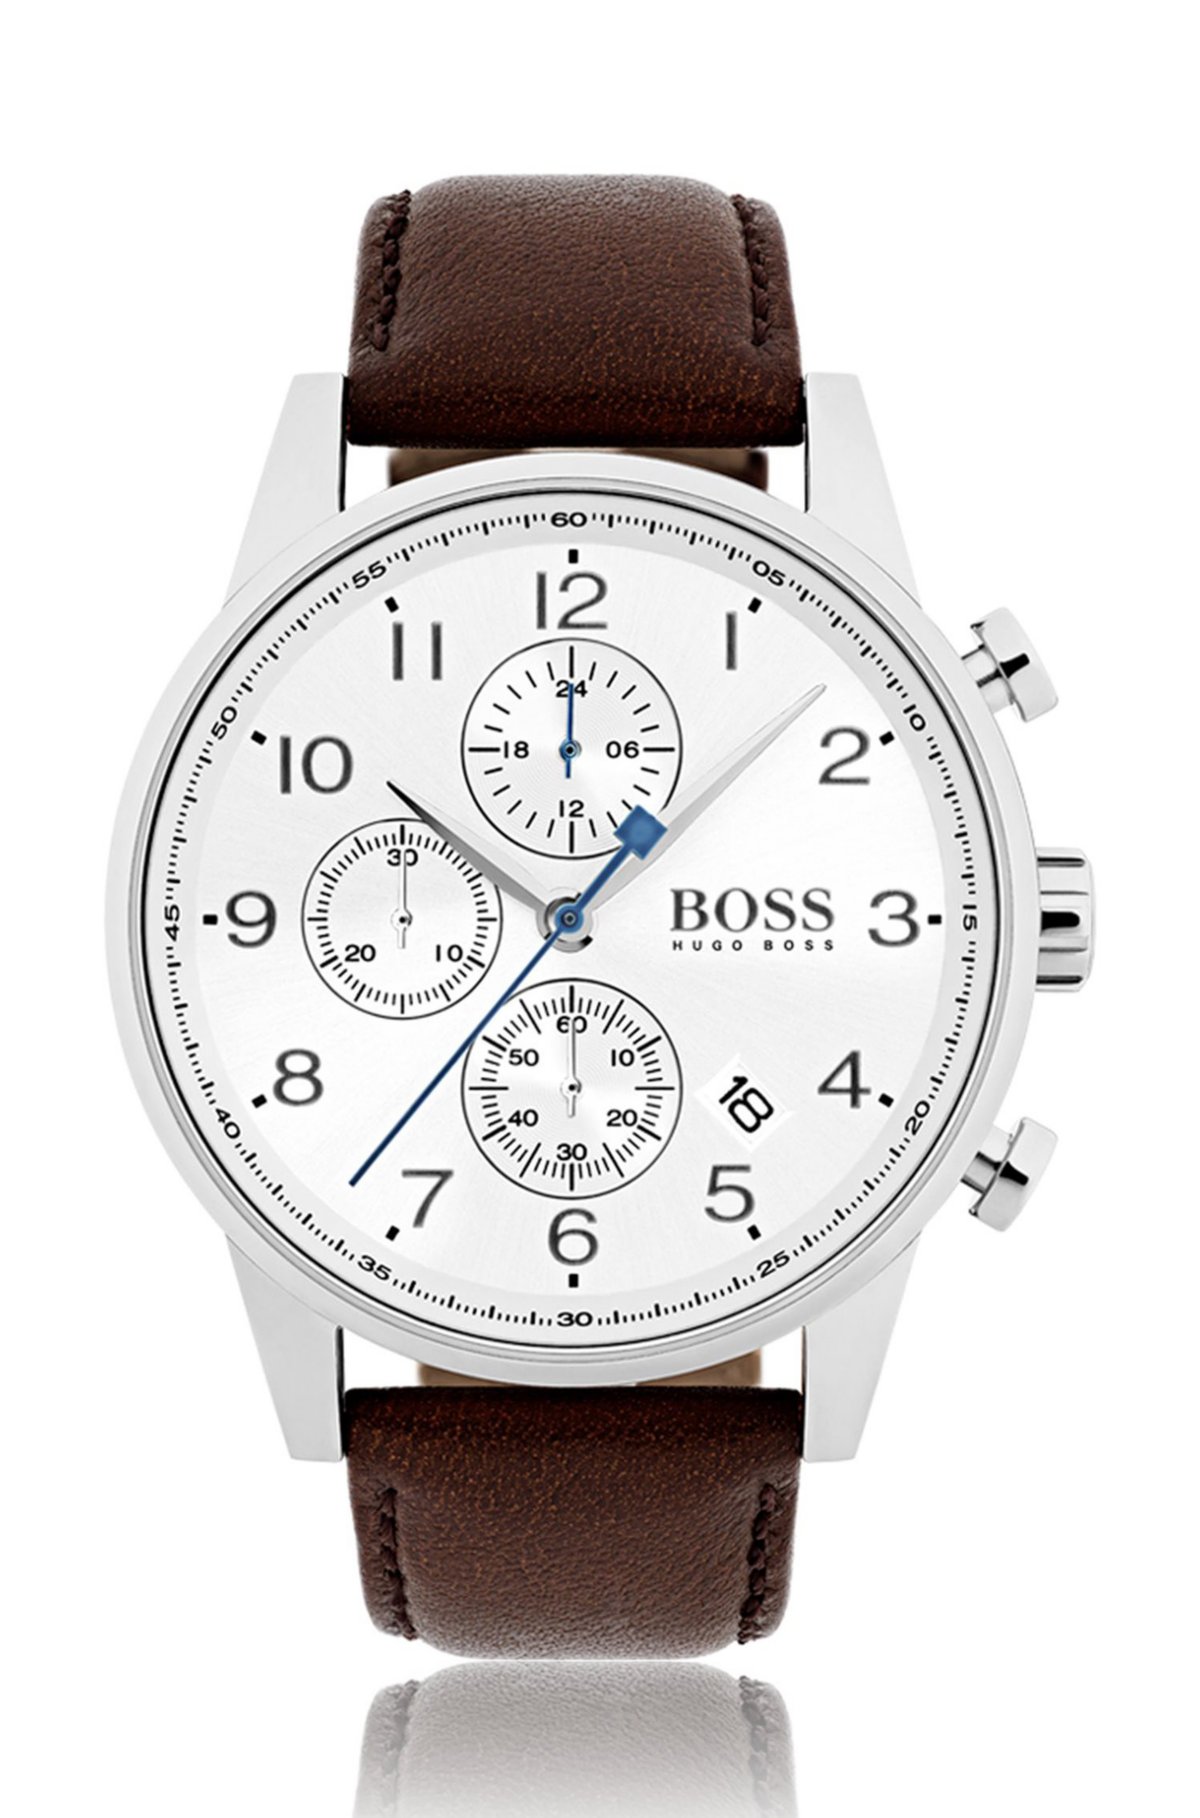 hat einen supergünstigen Ausverkauf! BOSS - Polished stainless-steel watch silver-white leather dial with strap and